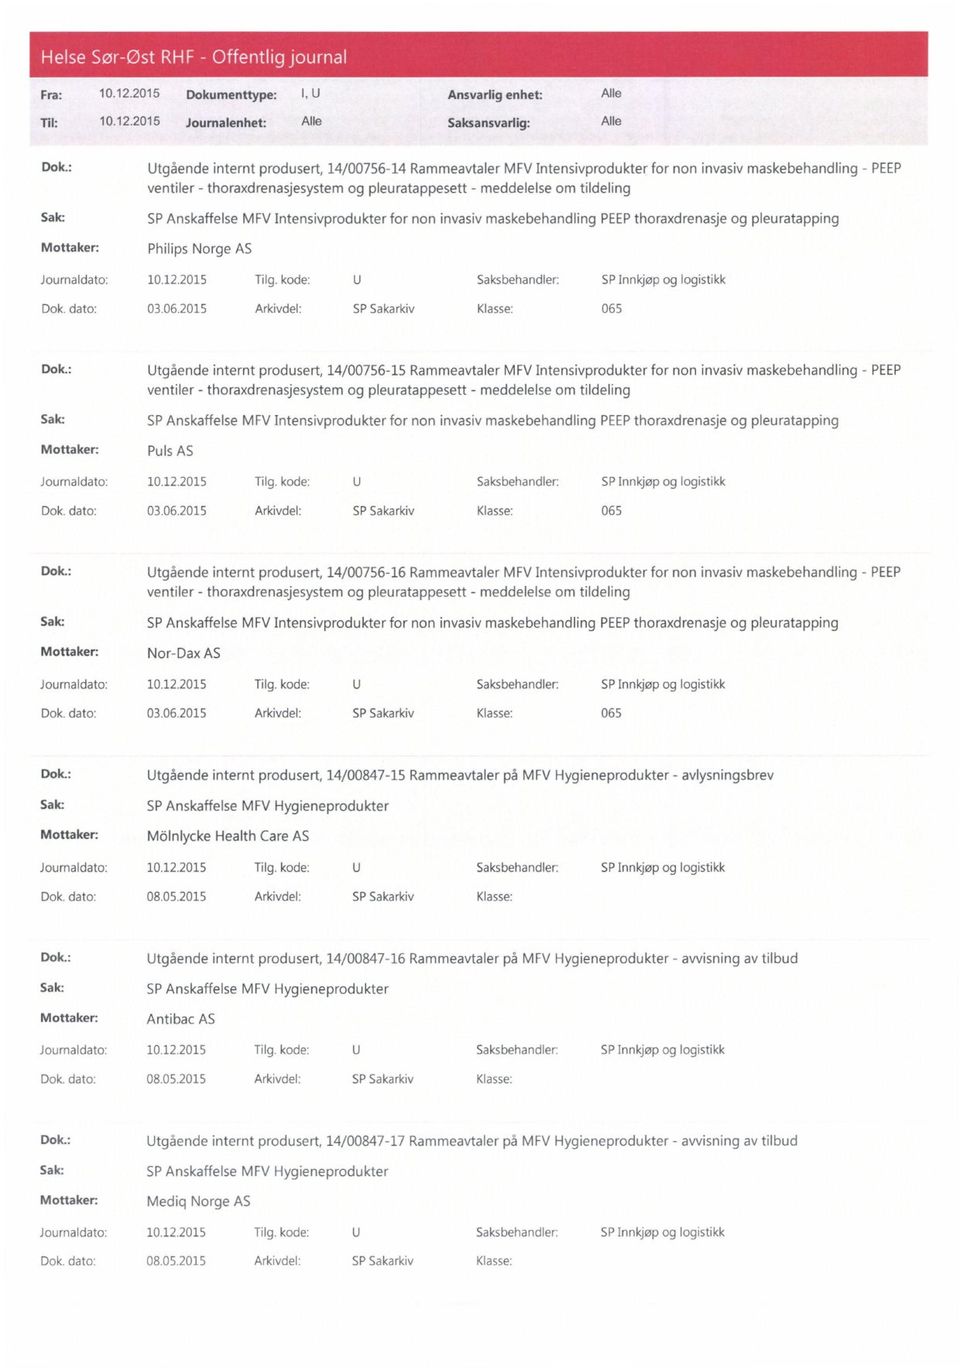 PEEPthoraxdrenasje og pleuratapping Philips Norge AS Dok.: Utgående internt produsert, 14/00756-15 Rammeavtaler MFV Intensivprodukter for non invasiv maskebehandling - PEEP Puls AS Dok.